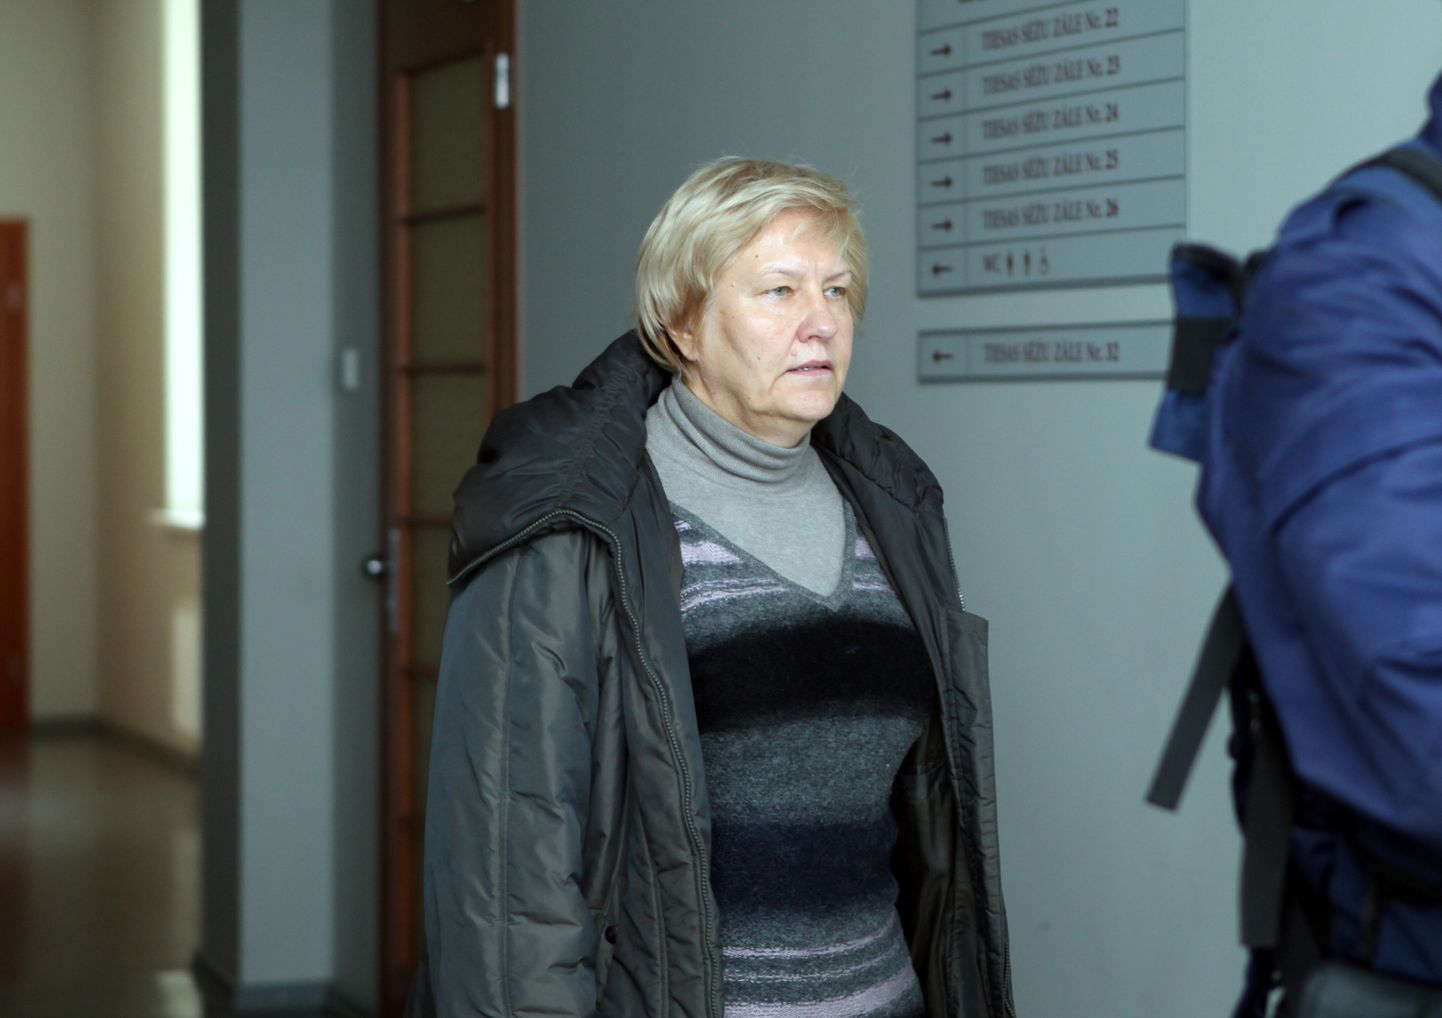 Iggadējā Rīgas domes Mājokļu un vides departamenta Dzīvokļu pārvaldes vadītāja Ārija Stabiņa tiek konvojēta uz Rīgas pilsētas Centra rajona tiesas sēdi, kurā pārskatīs Centra rajona tiesas lēmumu, ar kuru pēc Korupcijas novēršanas un apkarošanas biroja lūguma viņa tika apcietināta; attēls uzņemts 2012. gada 3. oktobrī.